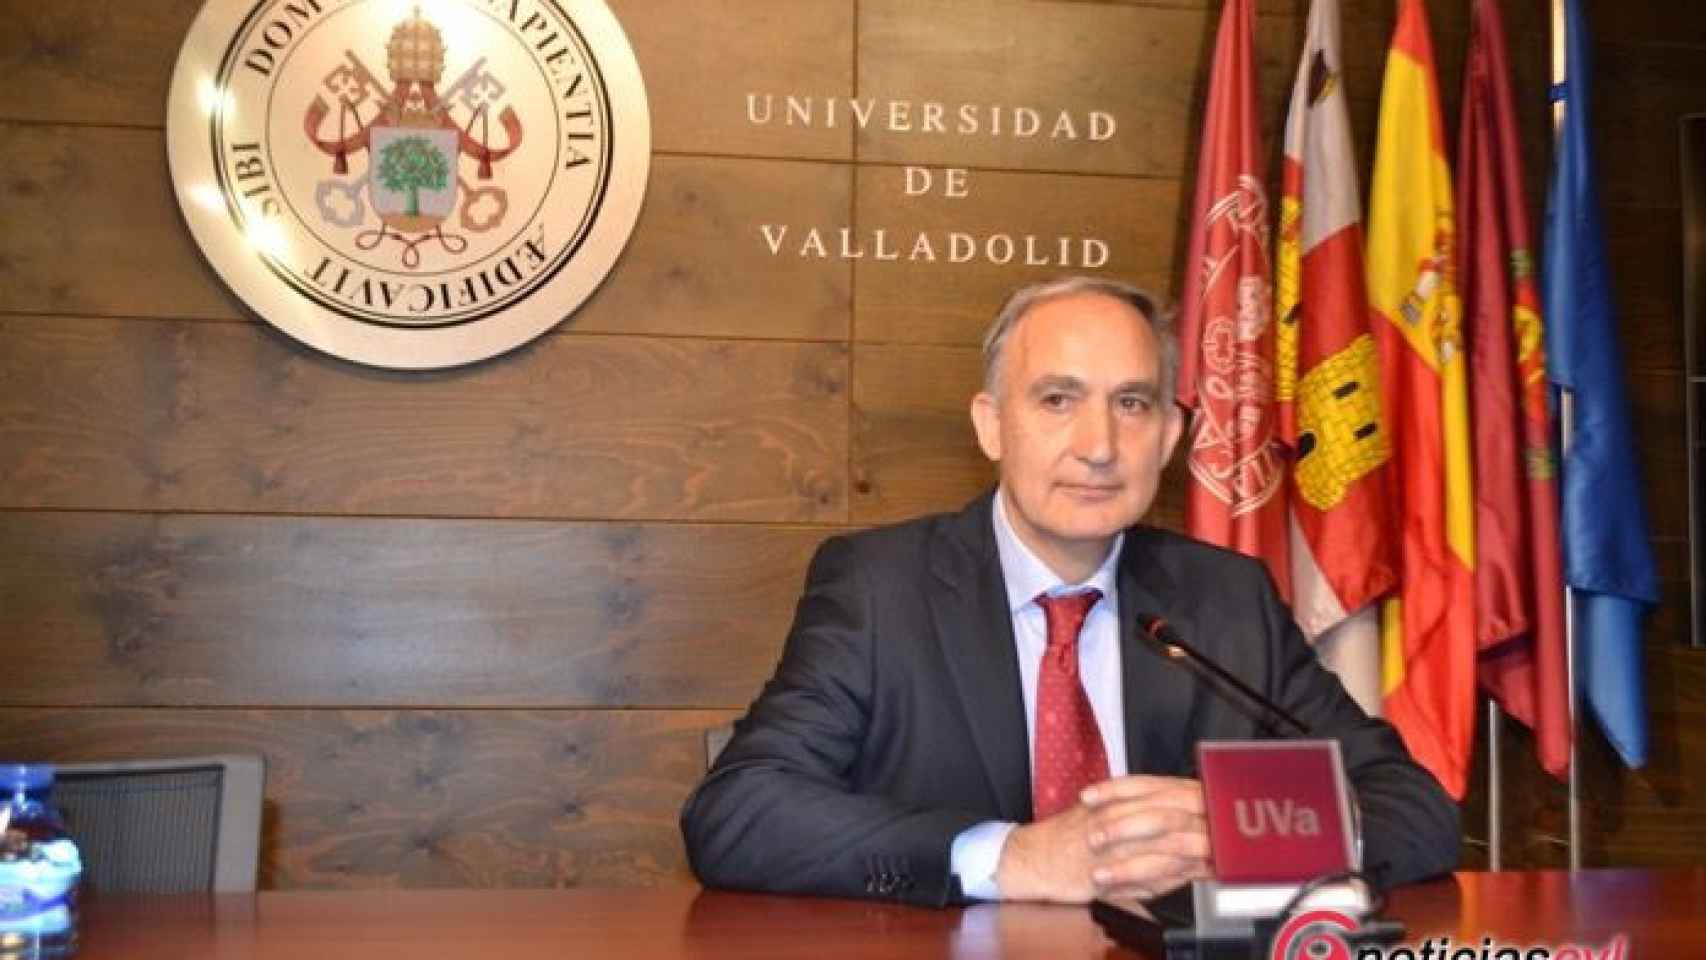 Antonio Largo, rector de la Universidad de Valladolid